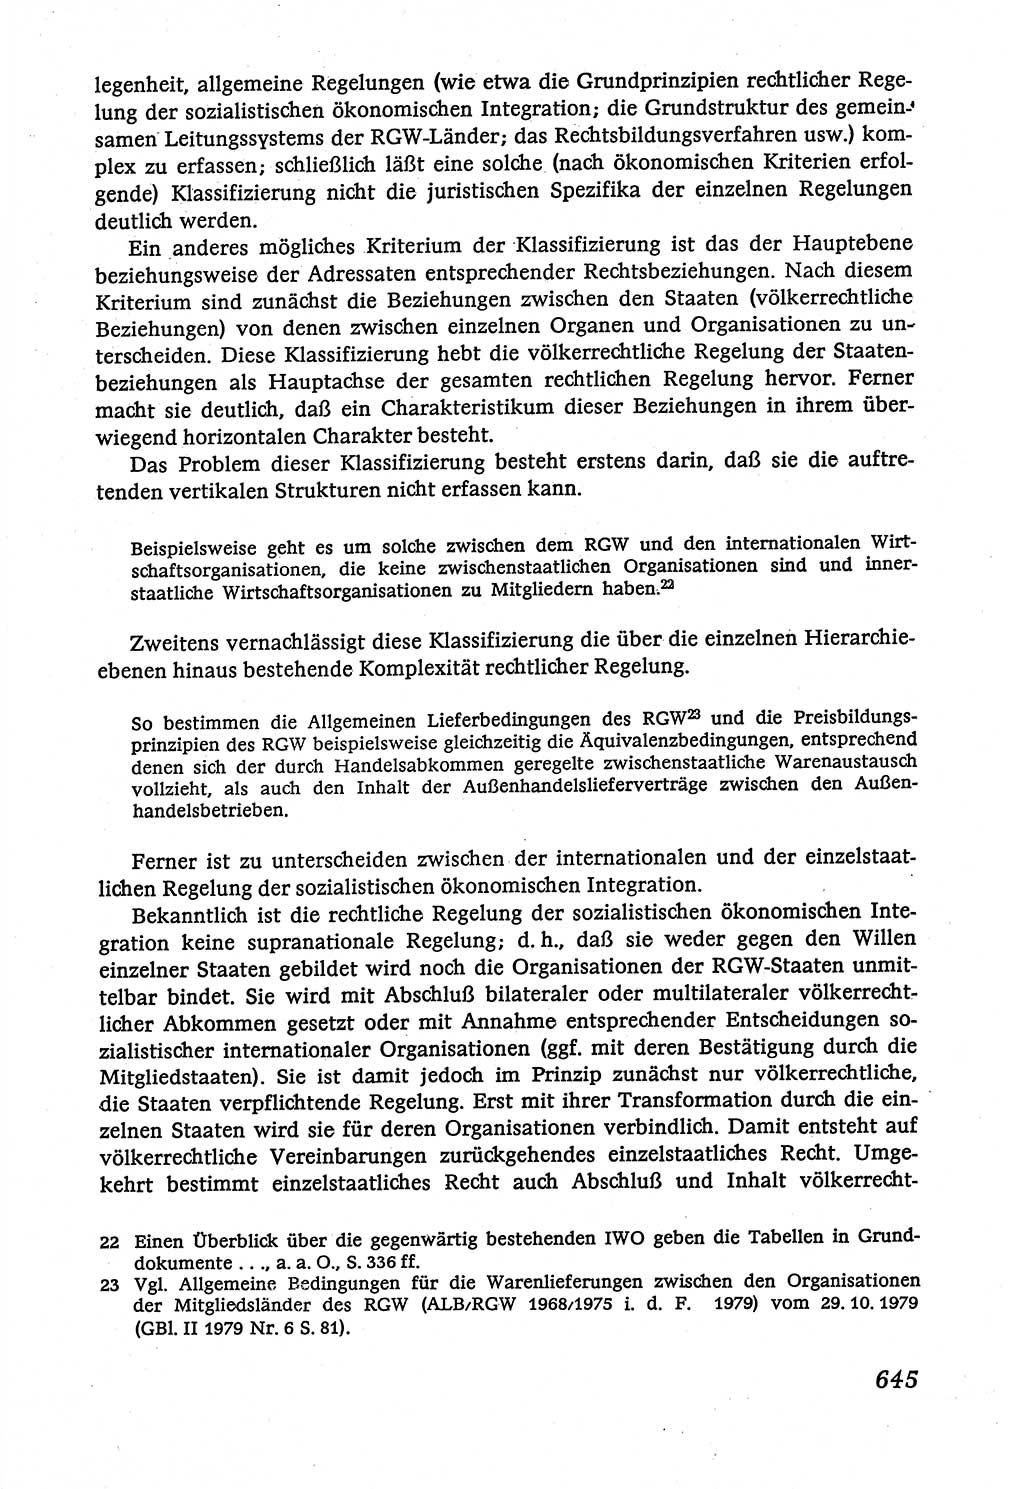 Marxistisch-leninistische (ML) Staats- und Rechtstheorie [Deutsche Demokratische Republik (DDR)], Lehrbuch 1980, Seite 645 (ML St.-R.-Th. DDR Lb. 1980, S. 645)